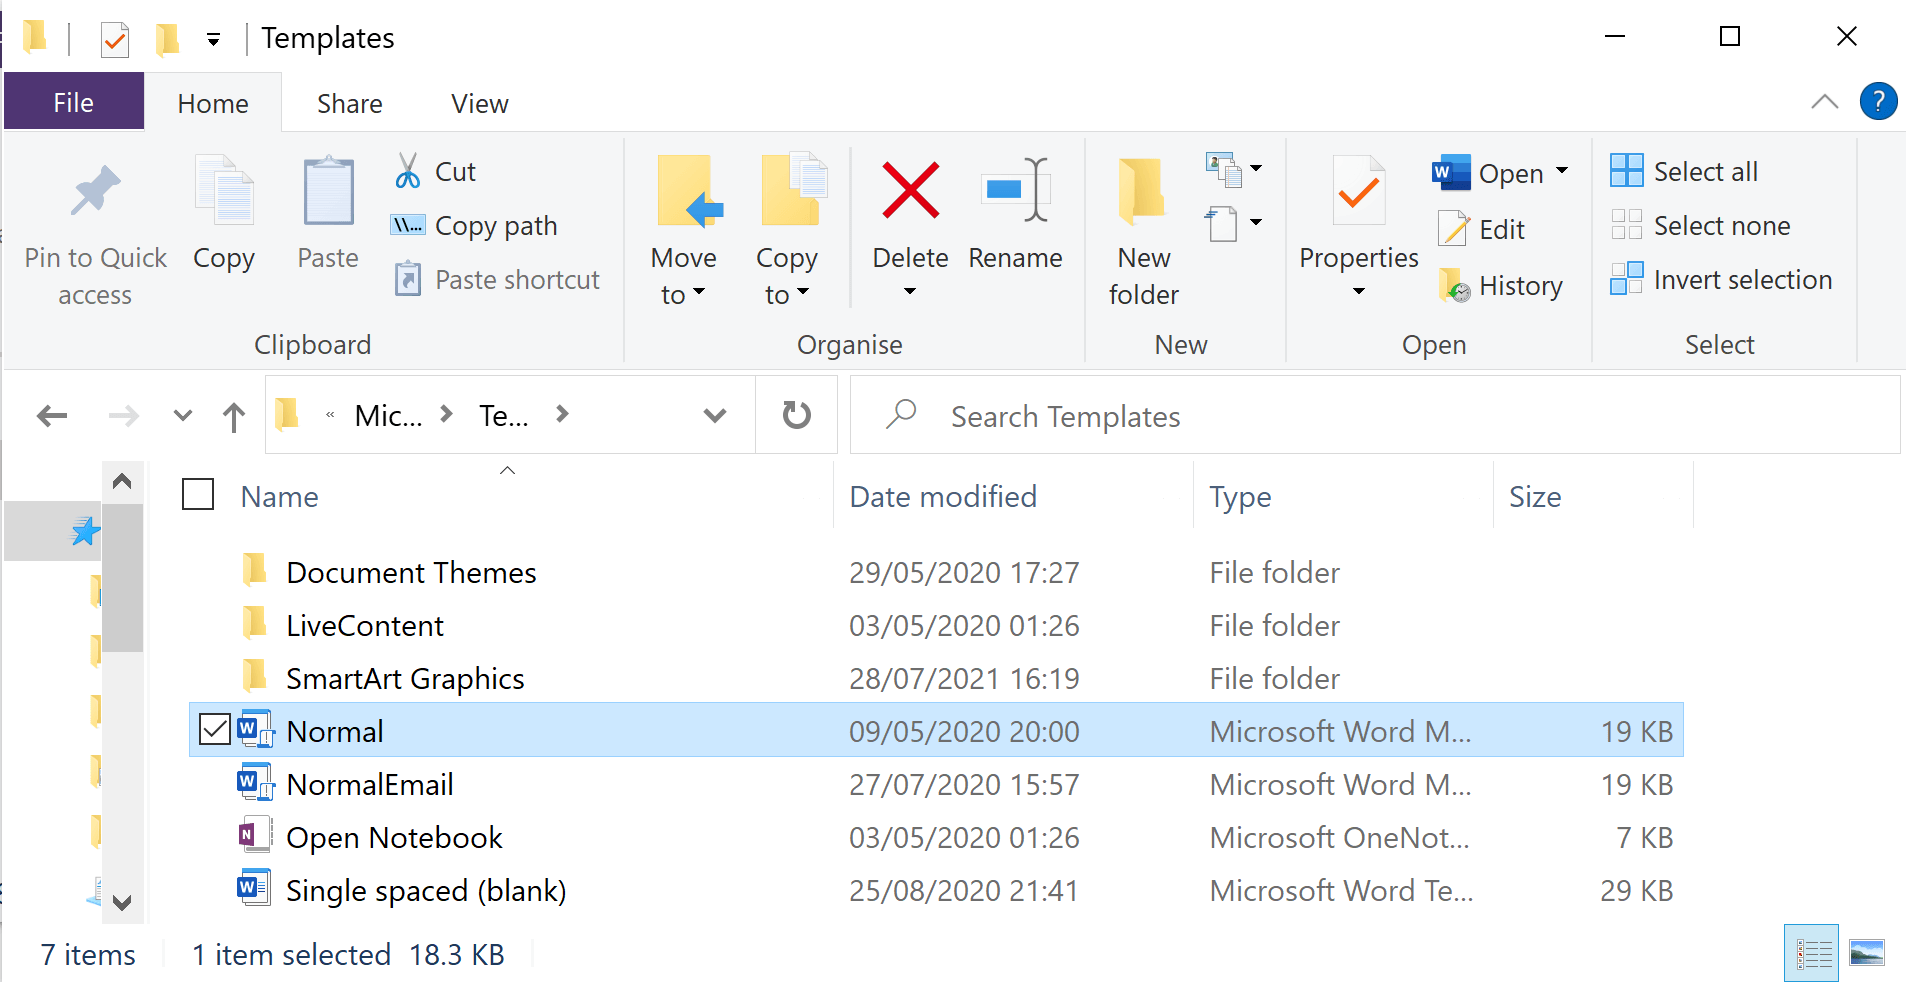 Delete the Normal file